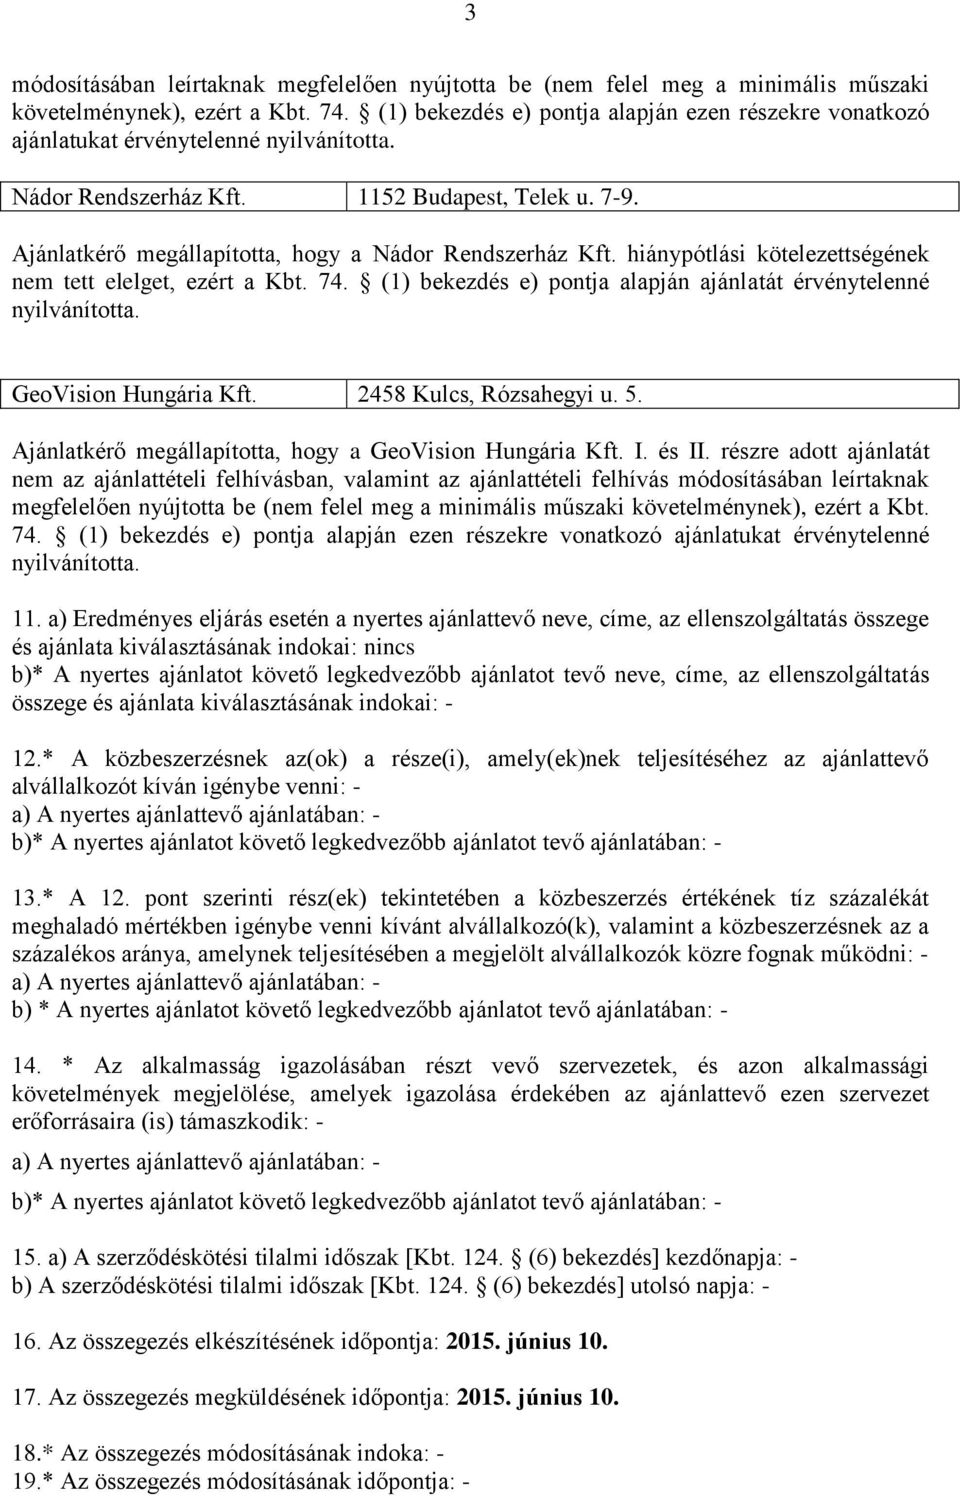 hiánypótlási kötelezettségének nem tett elelget, ezért a Kbt. 74. (1) bekezdés e) pontja alapján ajánlatát érvénytelenné GeoVision Hungária Kft. 2458 Kulcs, Rózsahegyi u. 5.